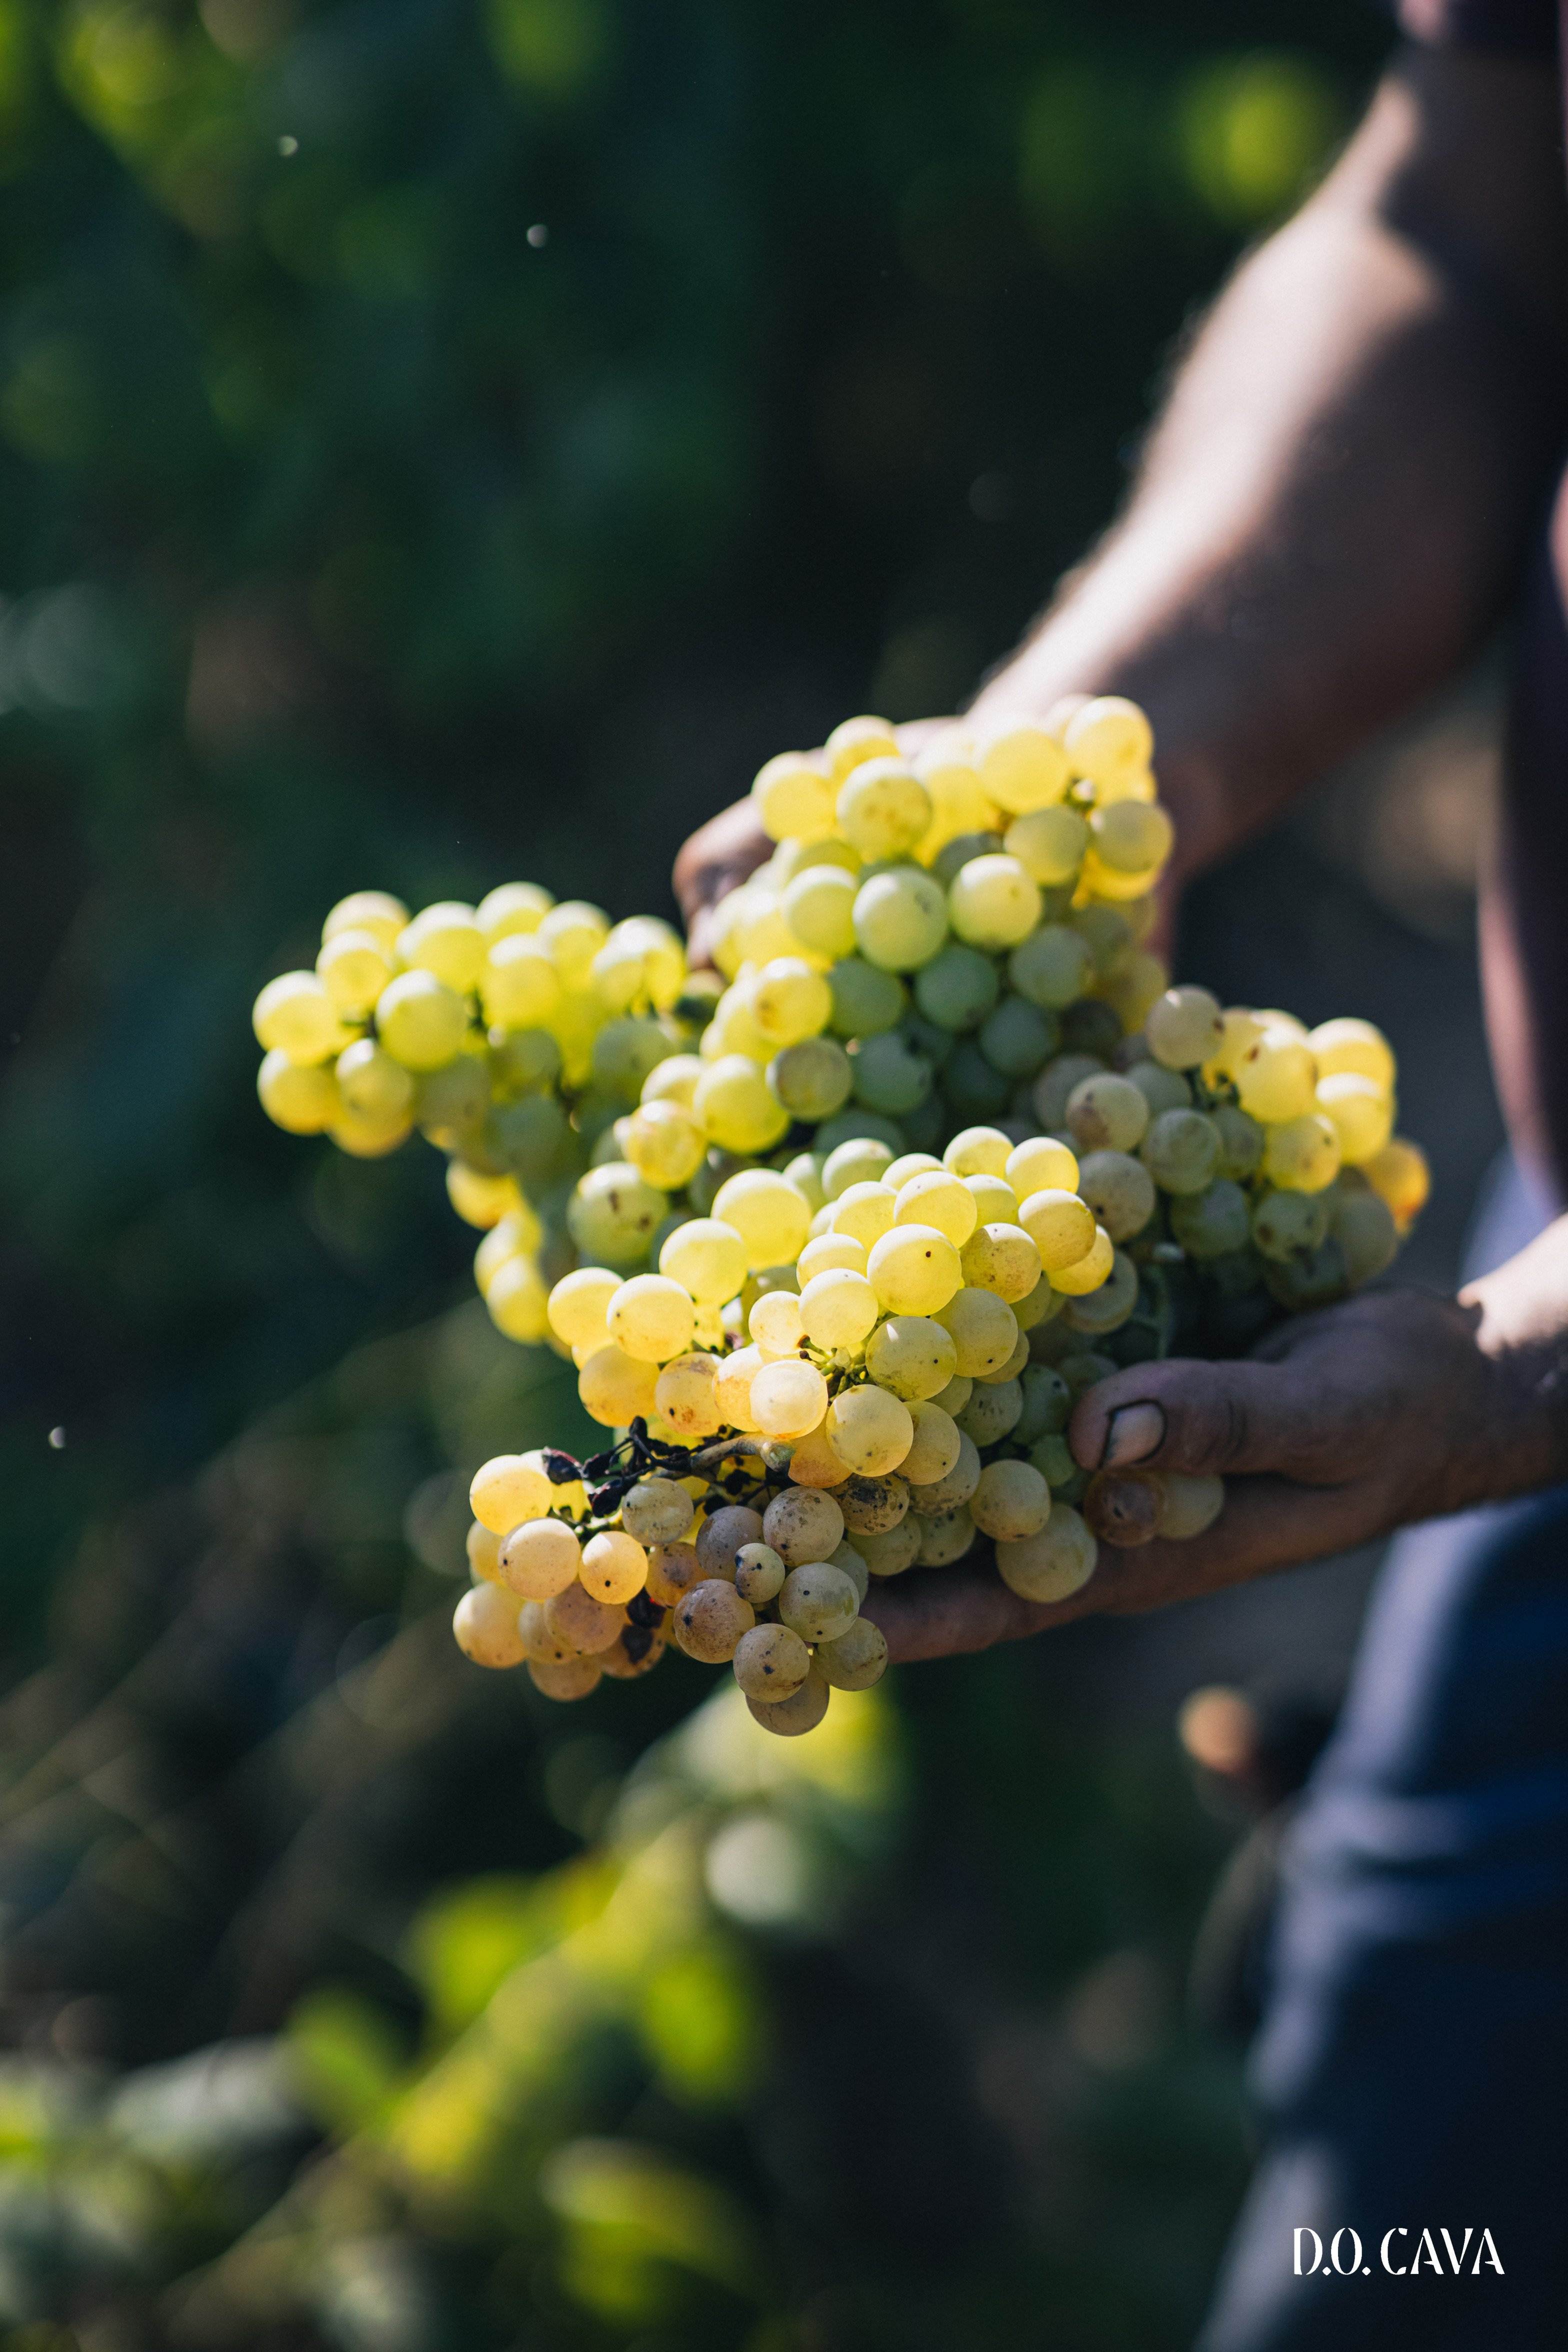 Producir un kg de uva para elaborar cava costa un 25% más que en el 2020